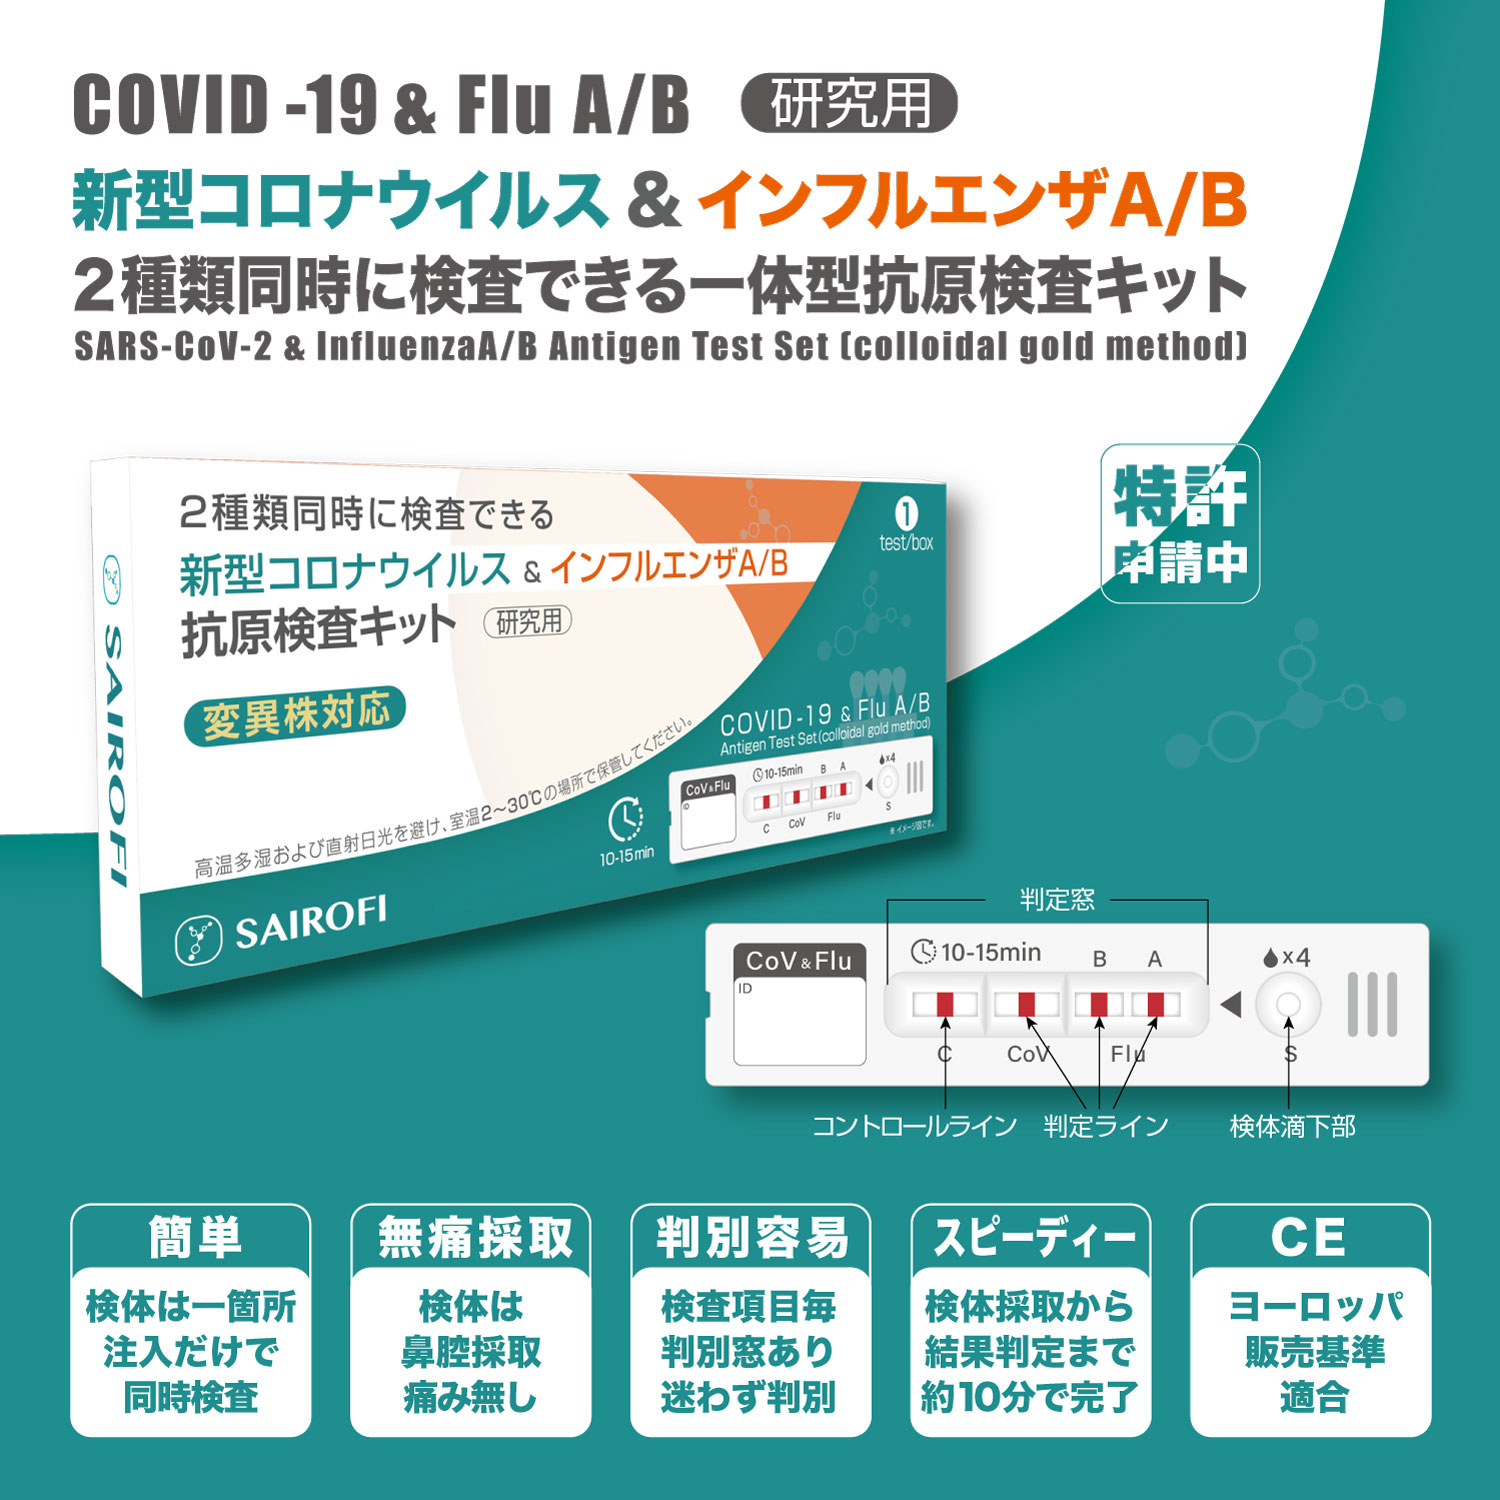 【研究用】新型コロナウイルス&インフルエンザA/B 抗原検査キット